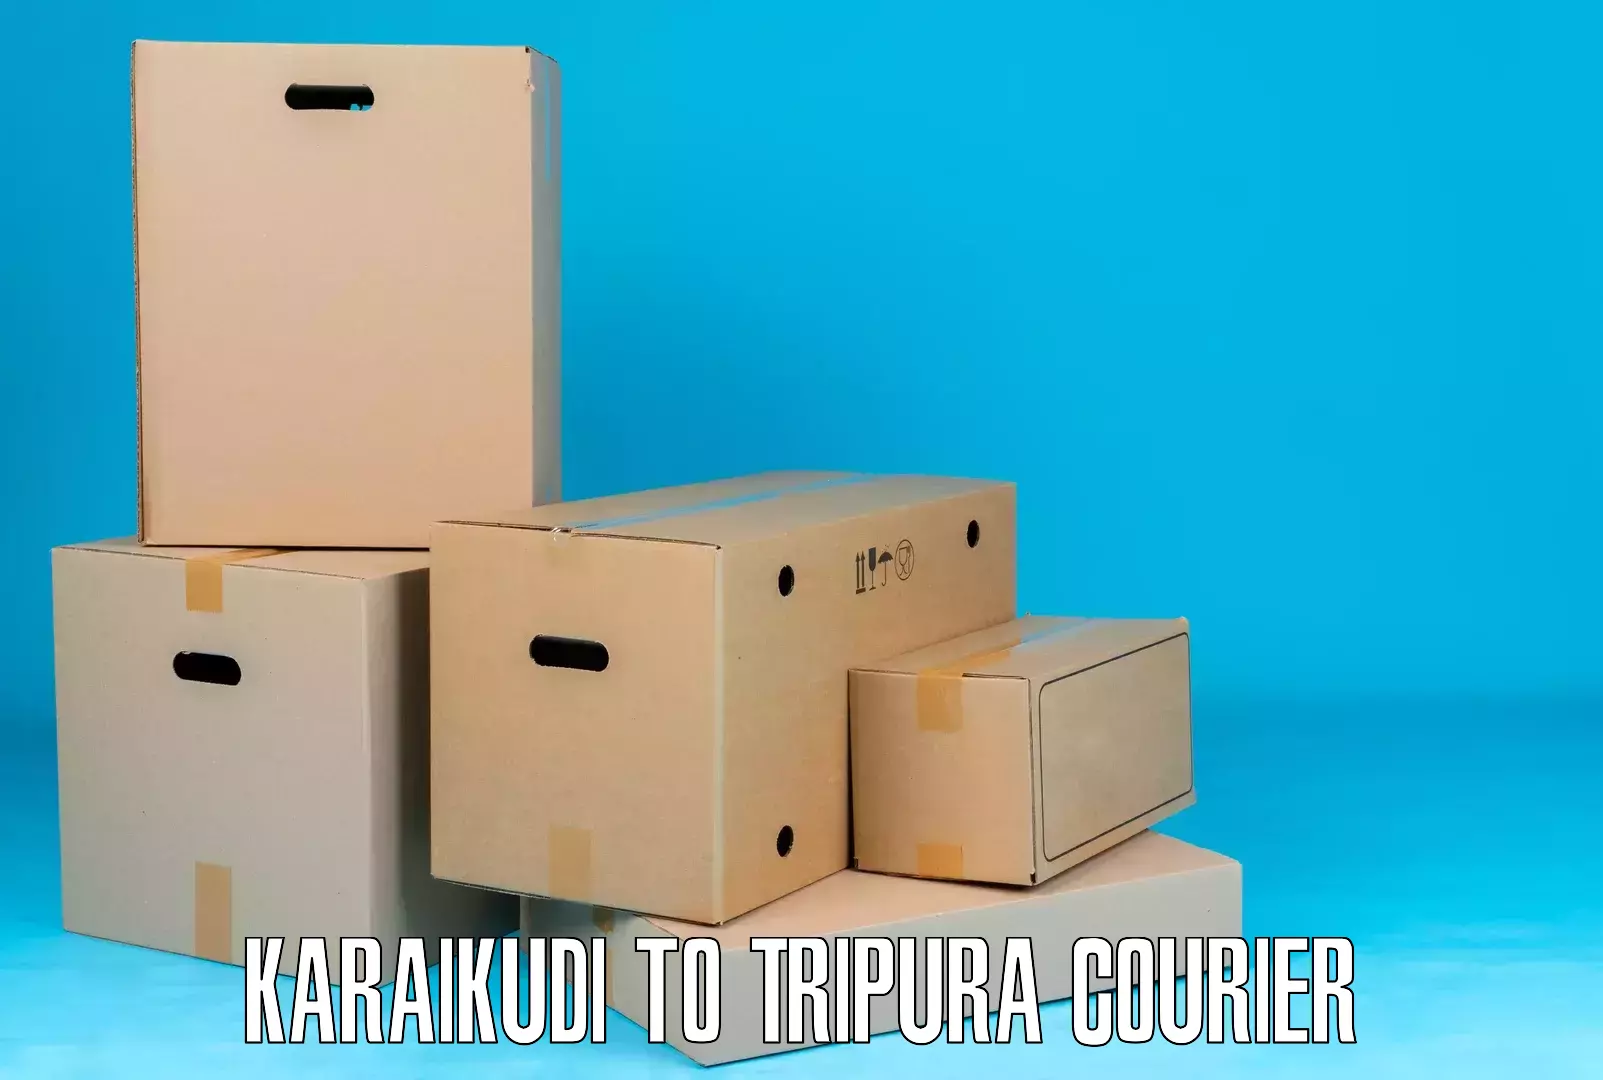 Digital courier platforms in Karaikudi to South Tripura